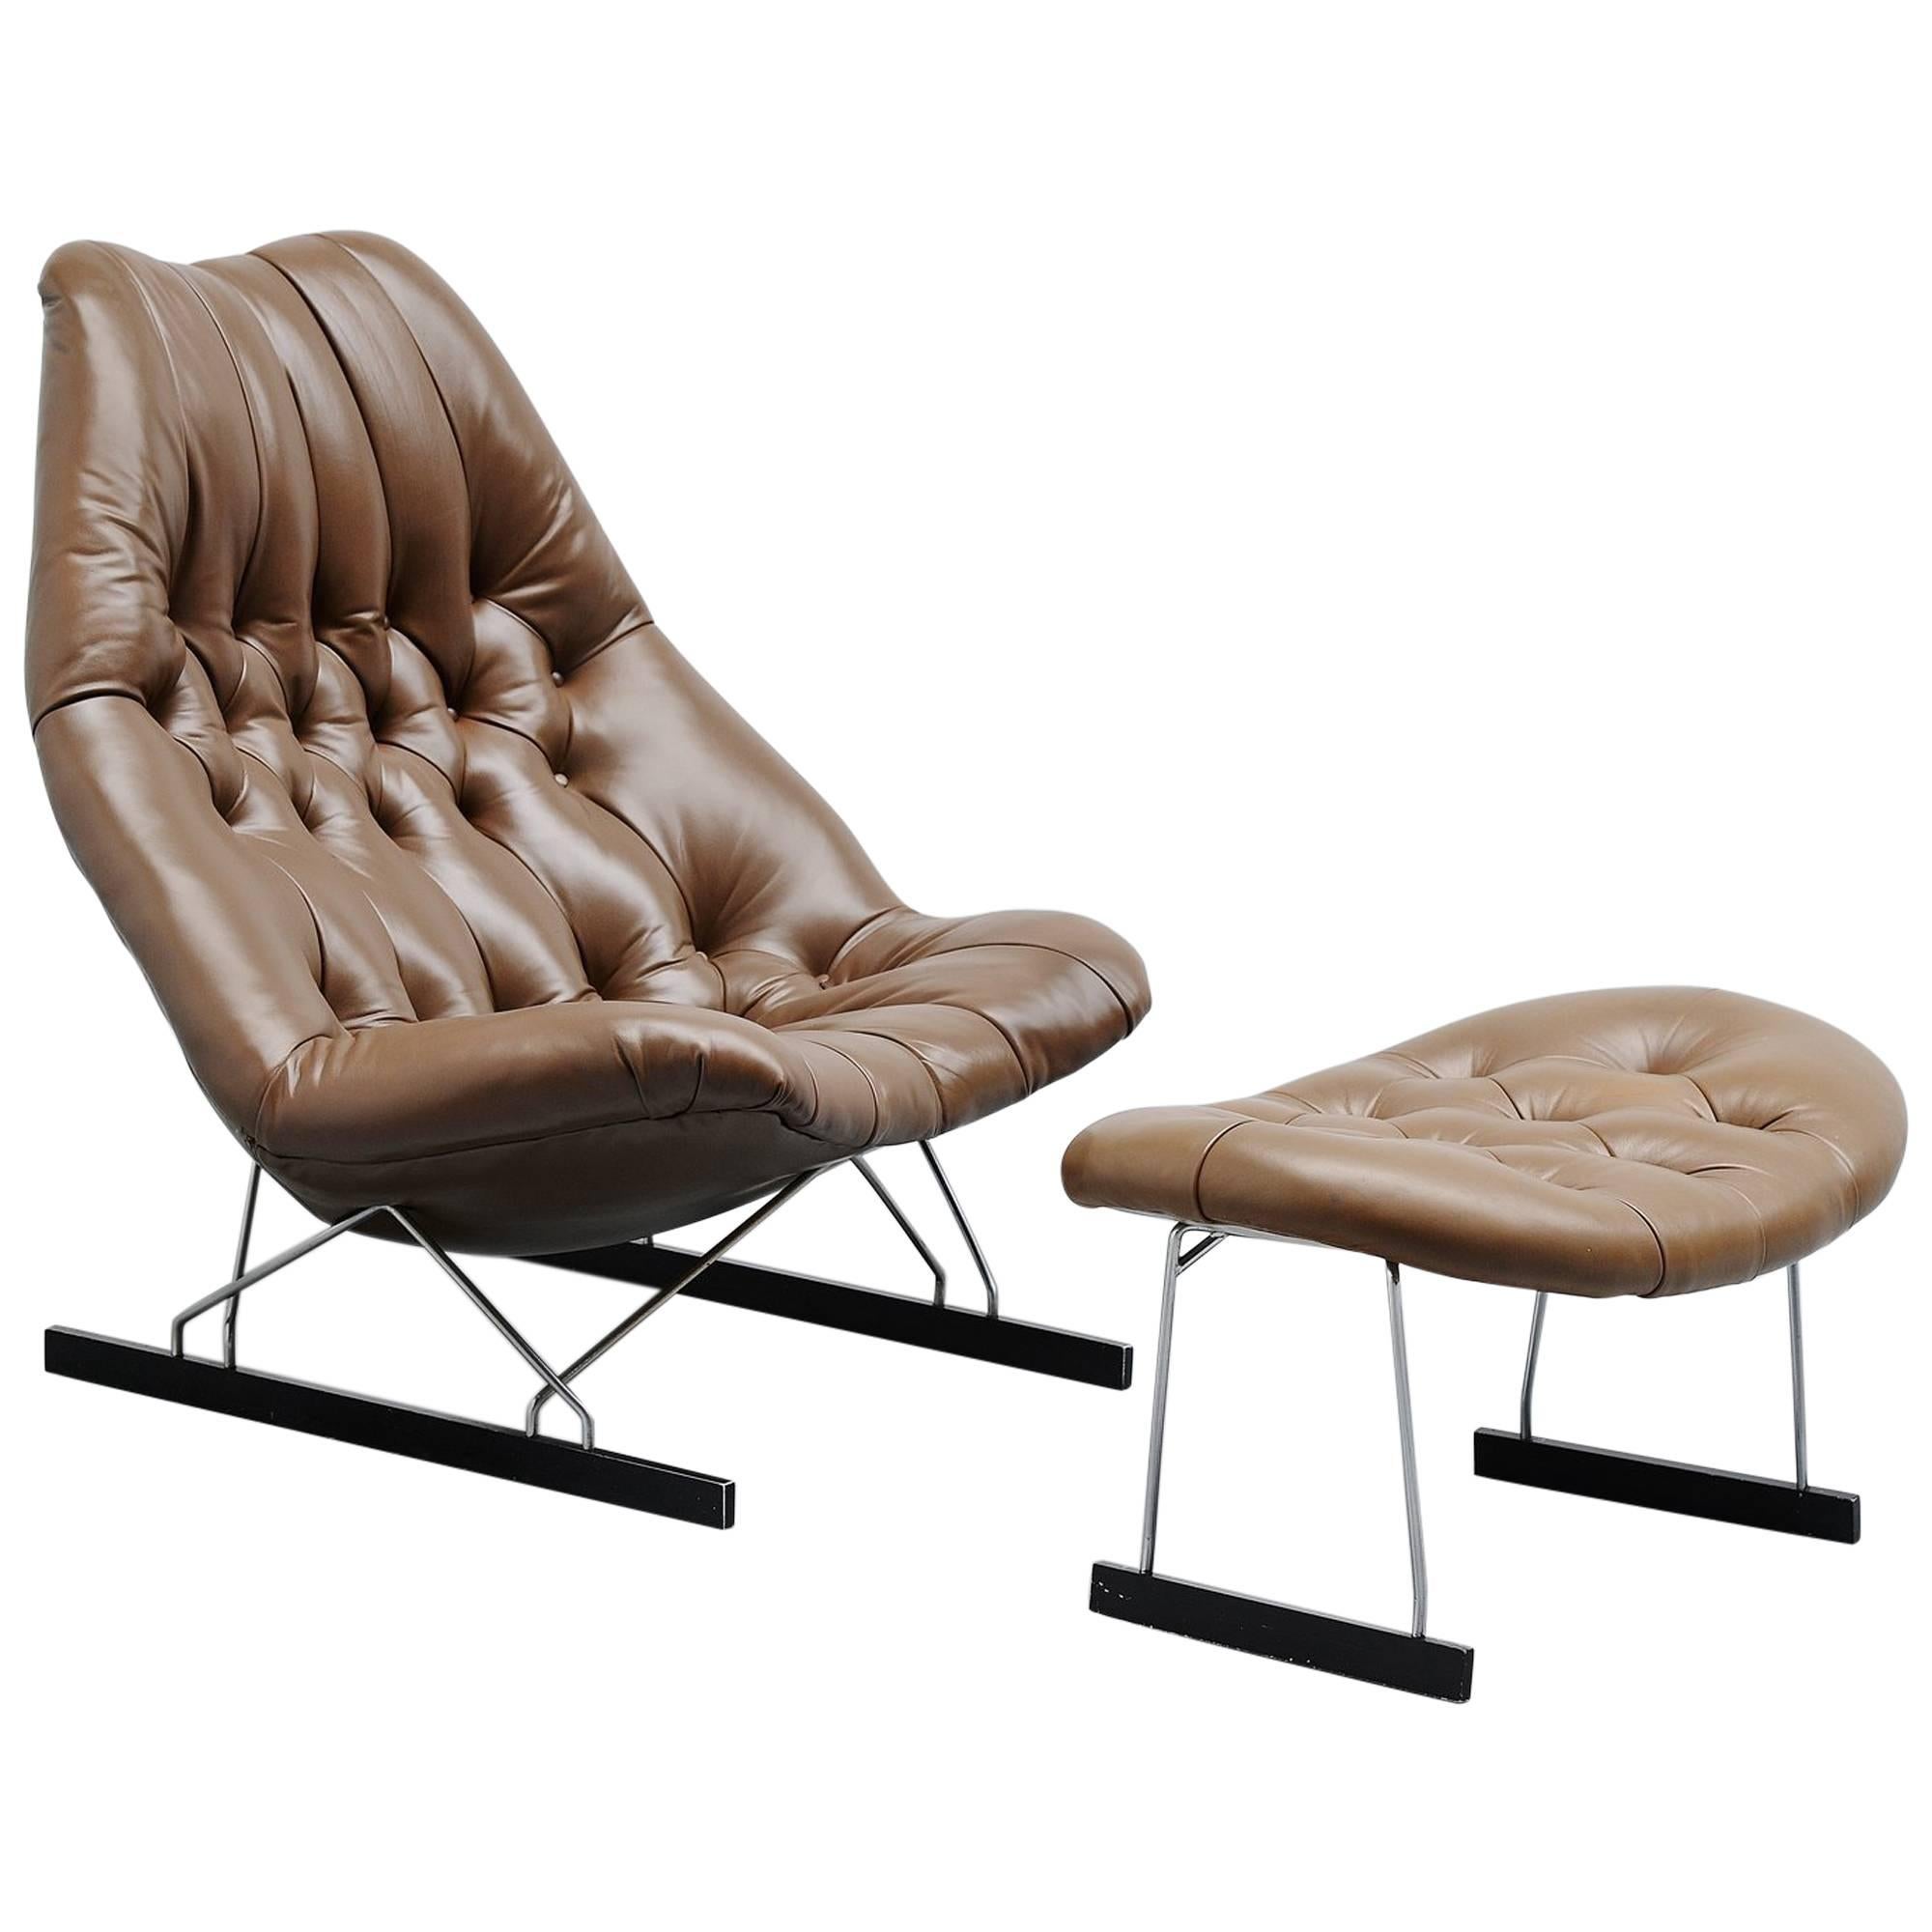 Geoffrey Harcourt F592 Lounge Chair Artifort, 1966